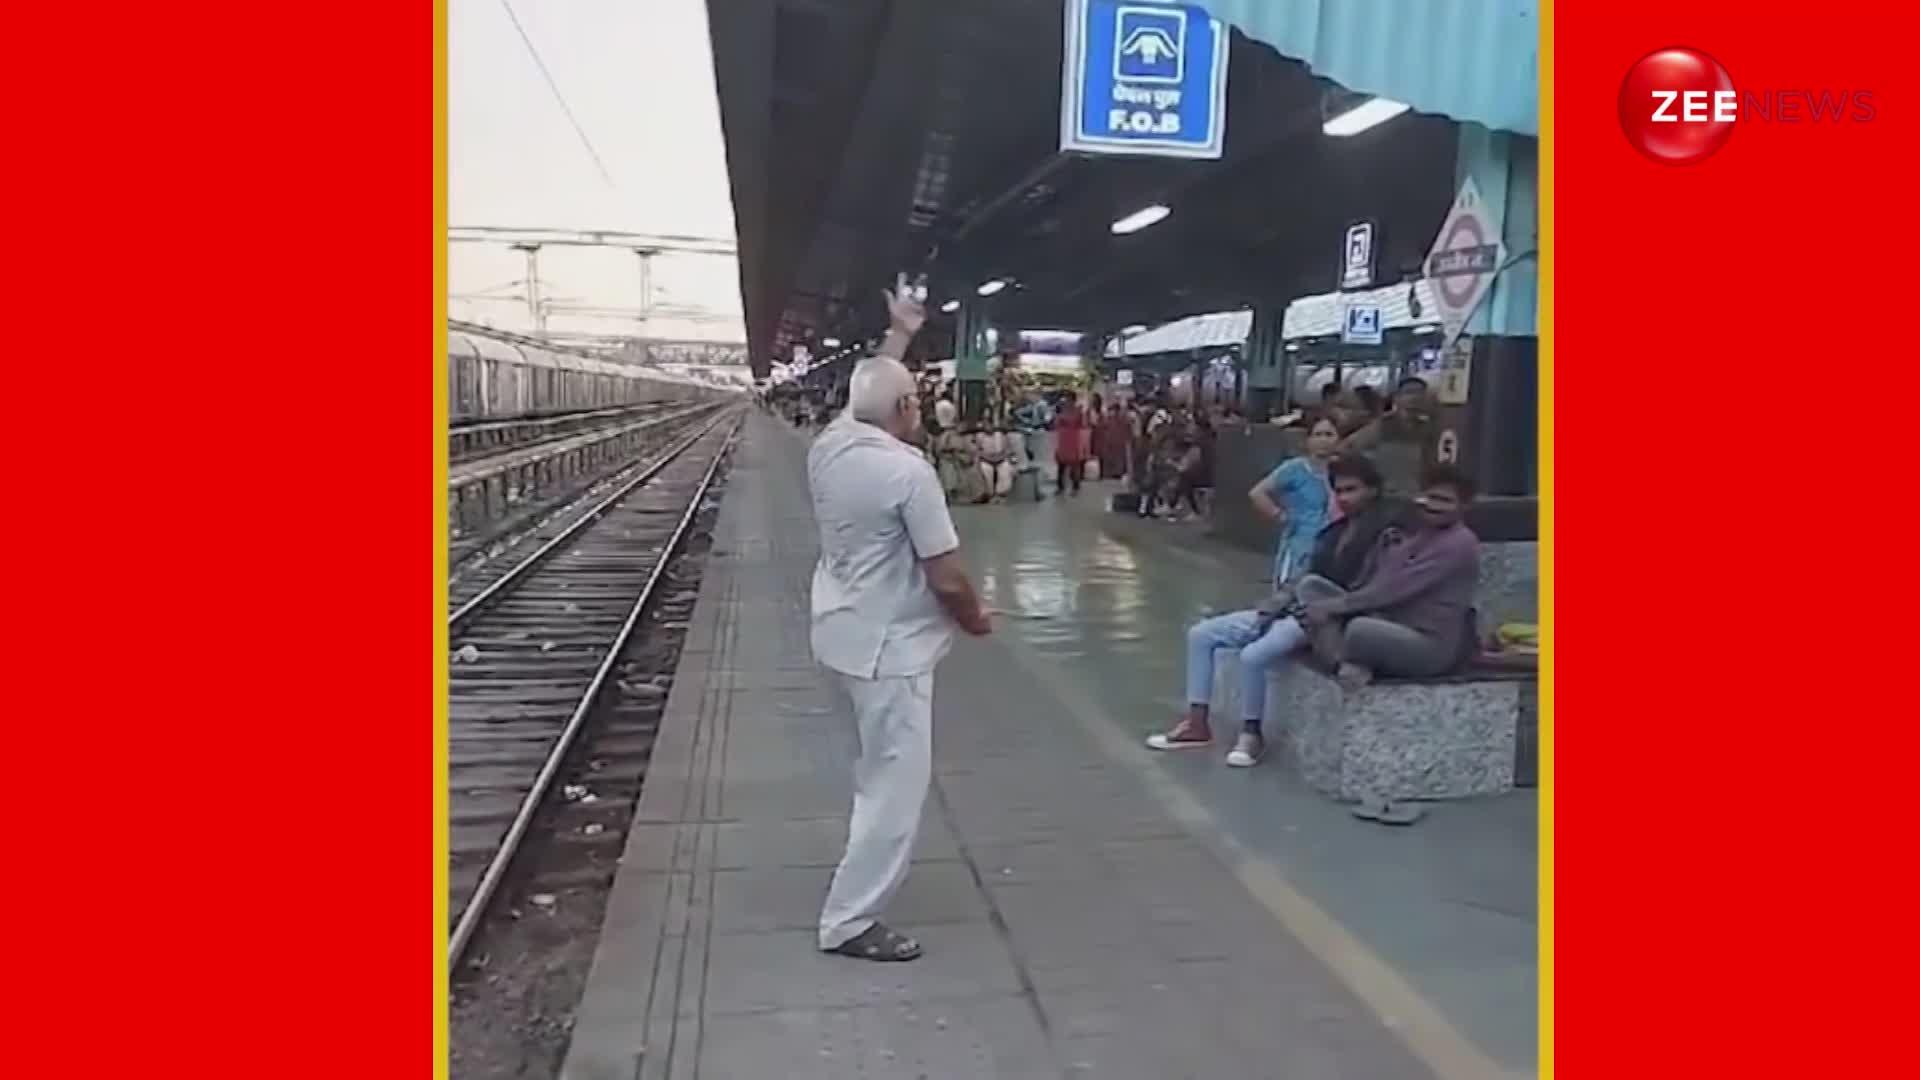 उज्जैन के रेलवे स्टेशन पर 'उड़े जब-जब जुल्फें तेरी' गाने पर जमकर नाचे दादाजी, देख लोग बोले- ये है जिंदगी जीने का जज्बा